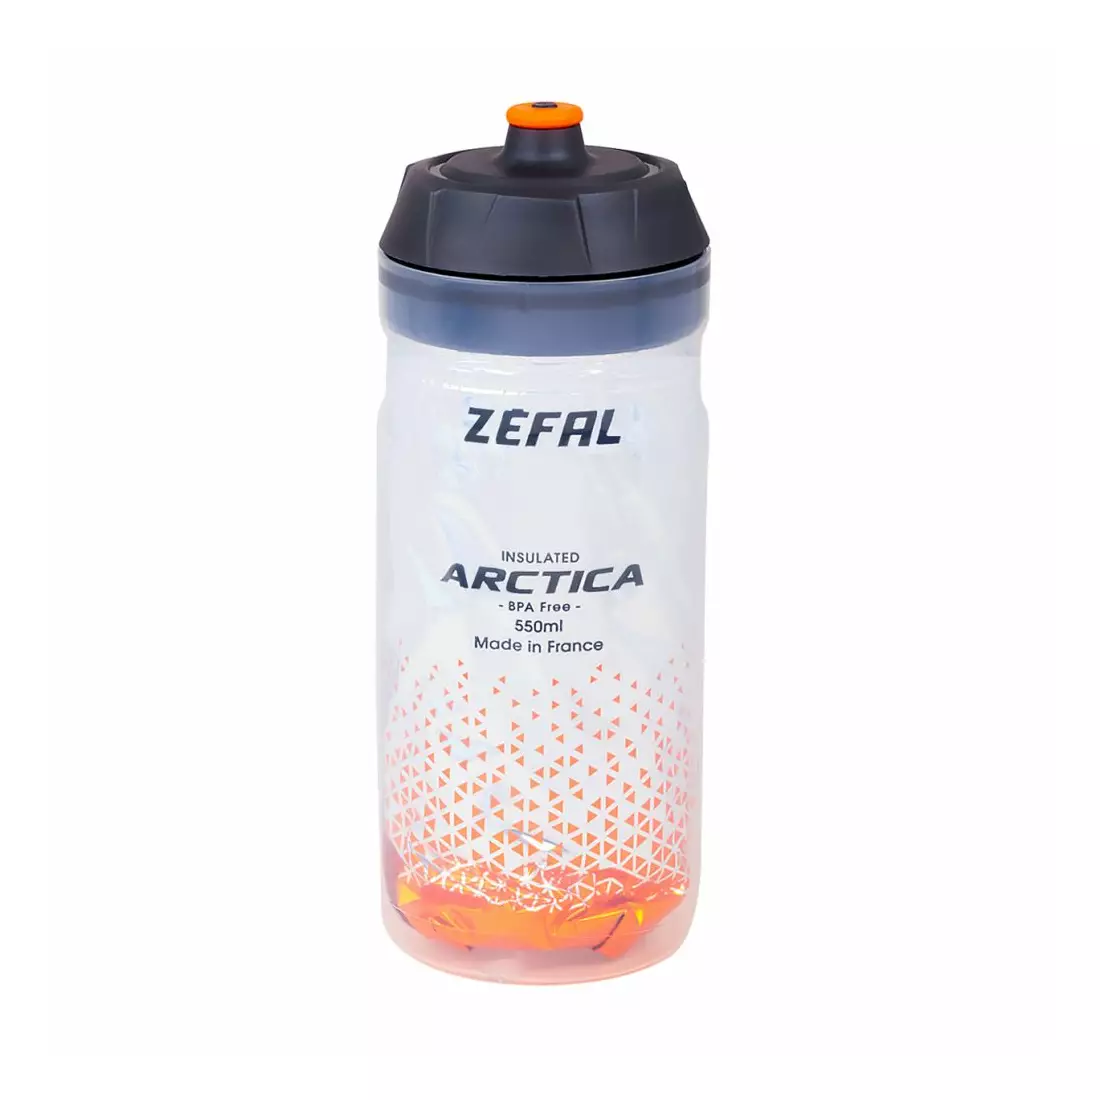 ZEFAL ARCTICA 55 Termo fľaša na bicykel, strieborno-oranžová, 550ml